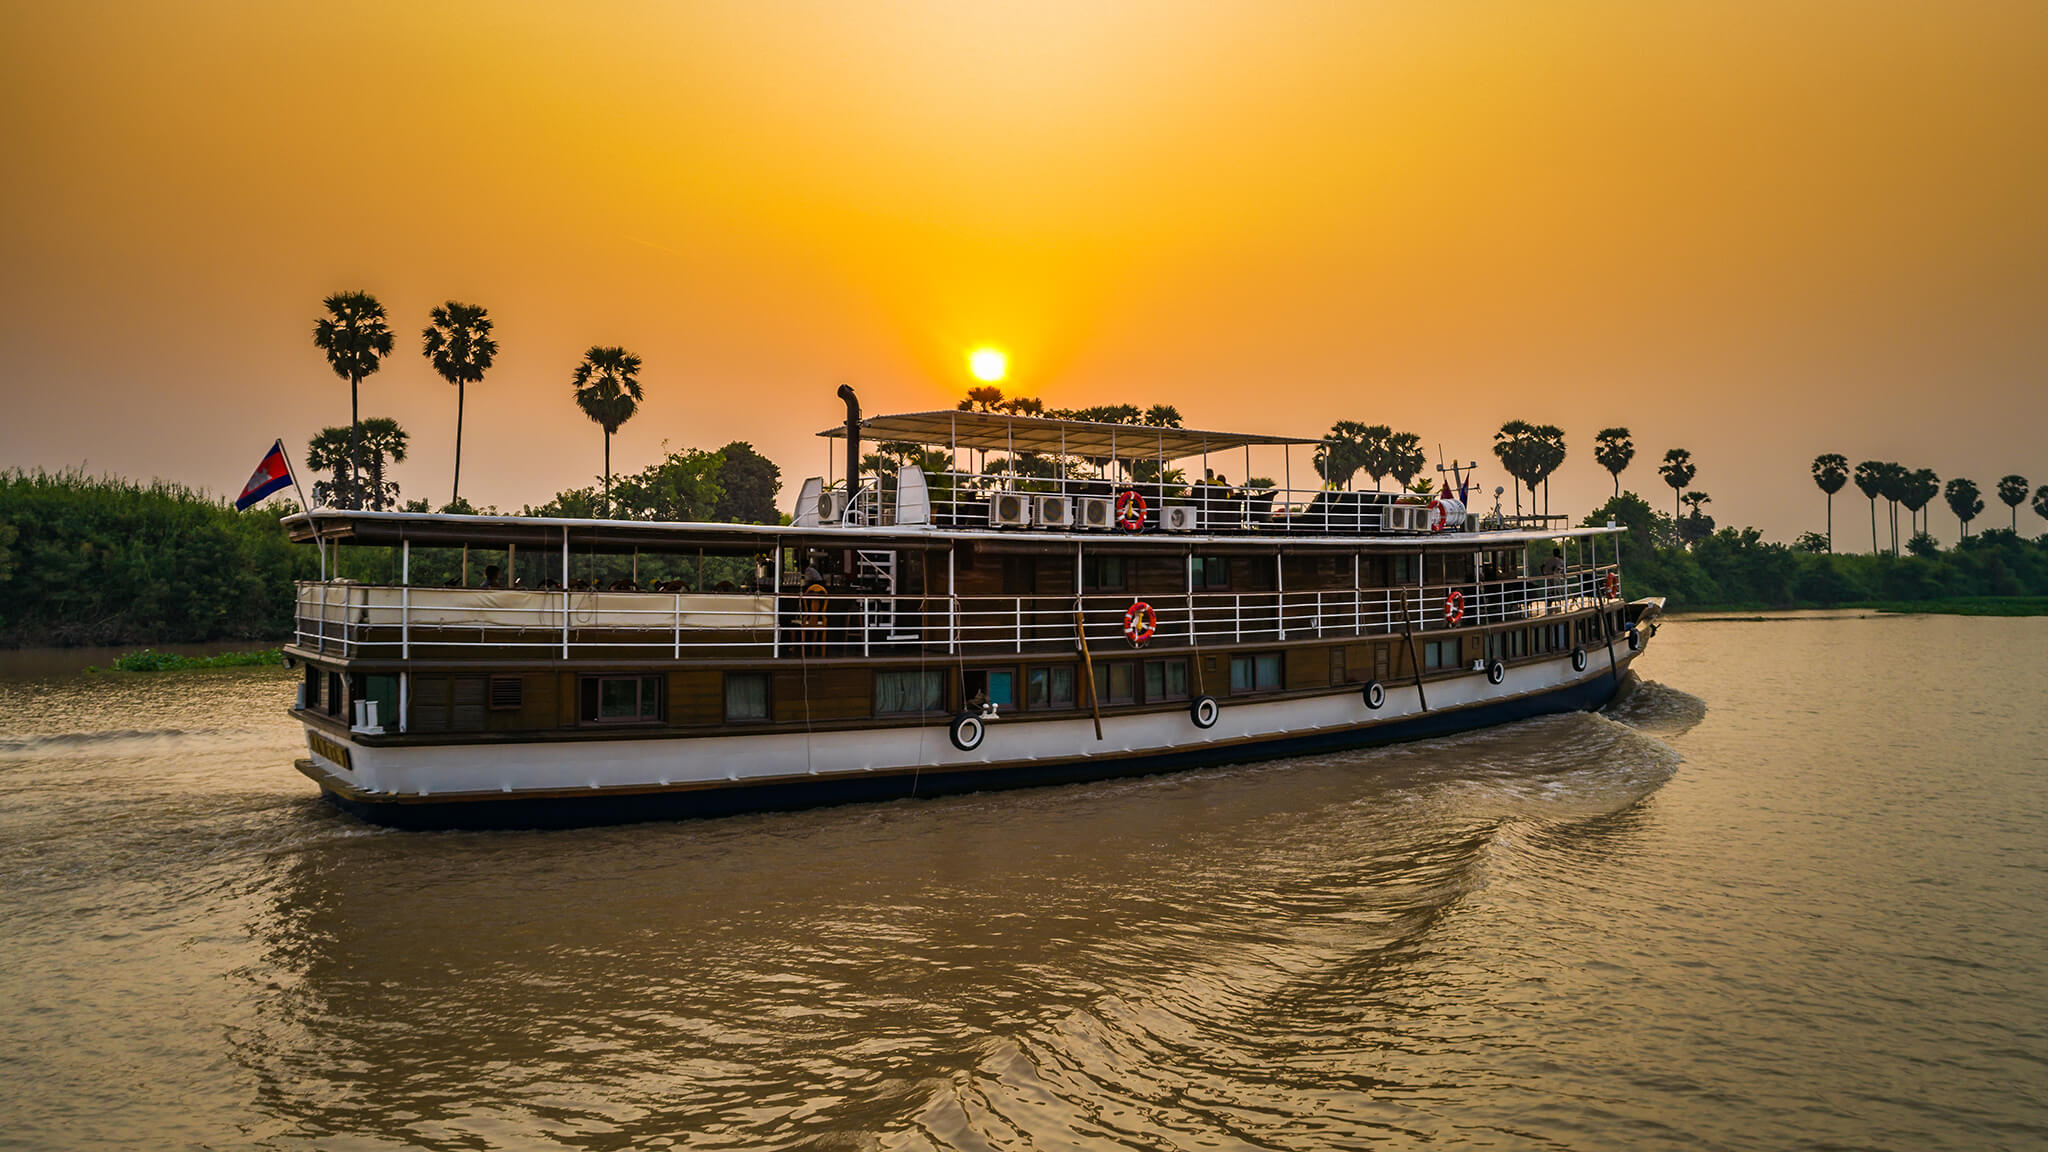 Toum Tiouv cruise ship on the Mekong delta